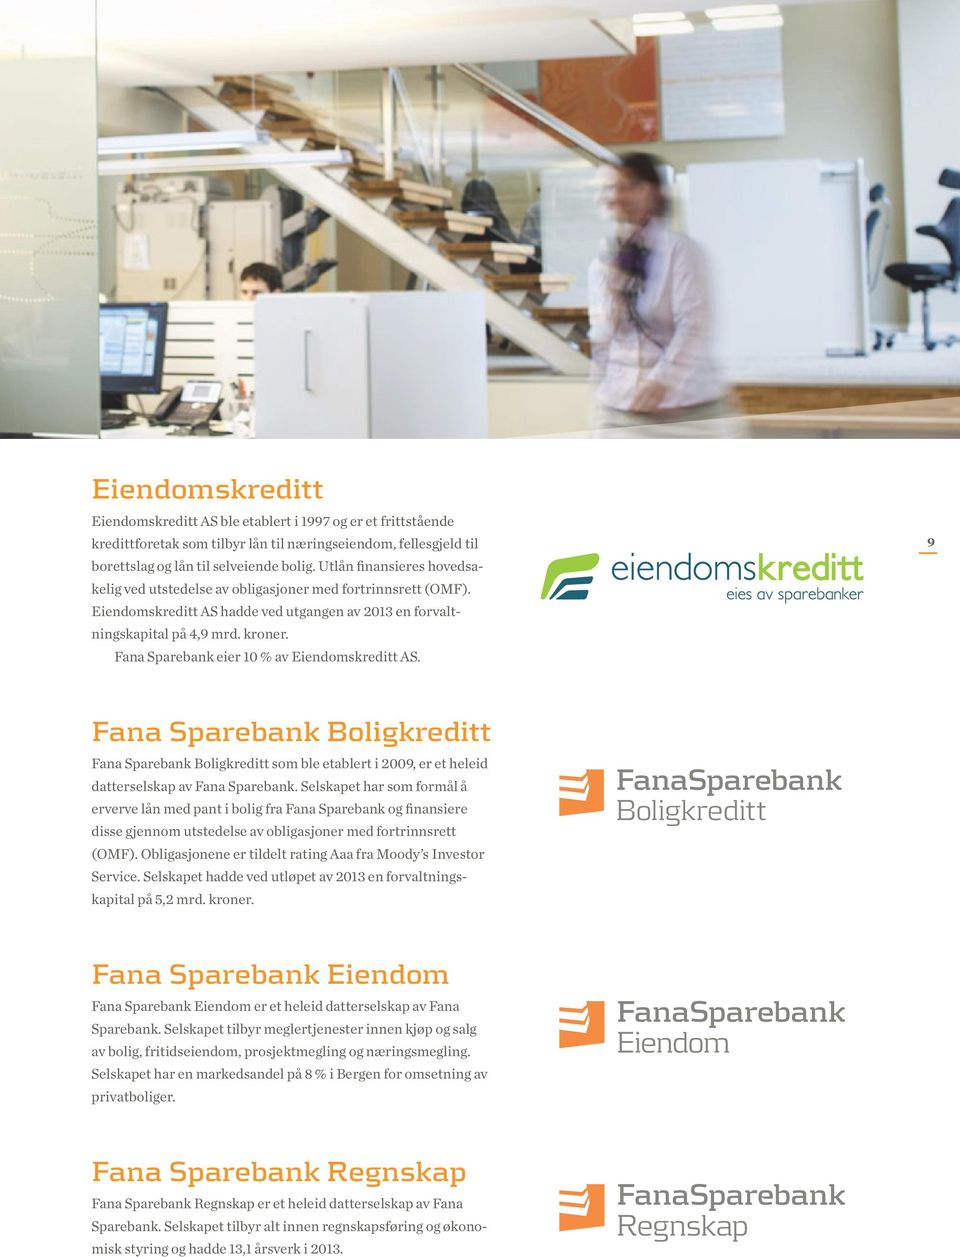 Fana Sparebank eier 10 % av Eiendomskreditt AS. 9 Fana Sparebank Boligkreditt Fana Sparebank Boligkreditt som ble etablert i 2009, er et heleid datterselskap av Fana Sparebank.